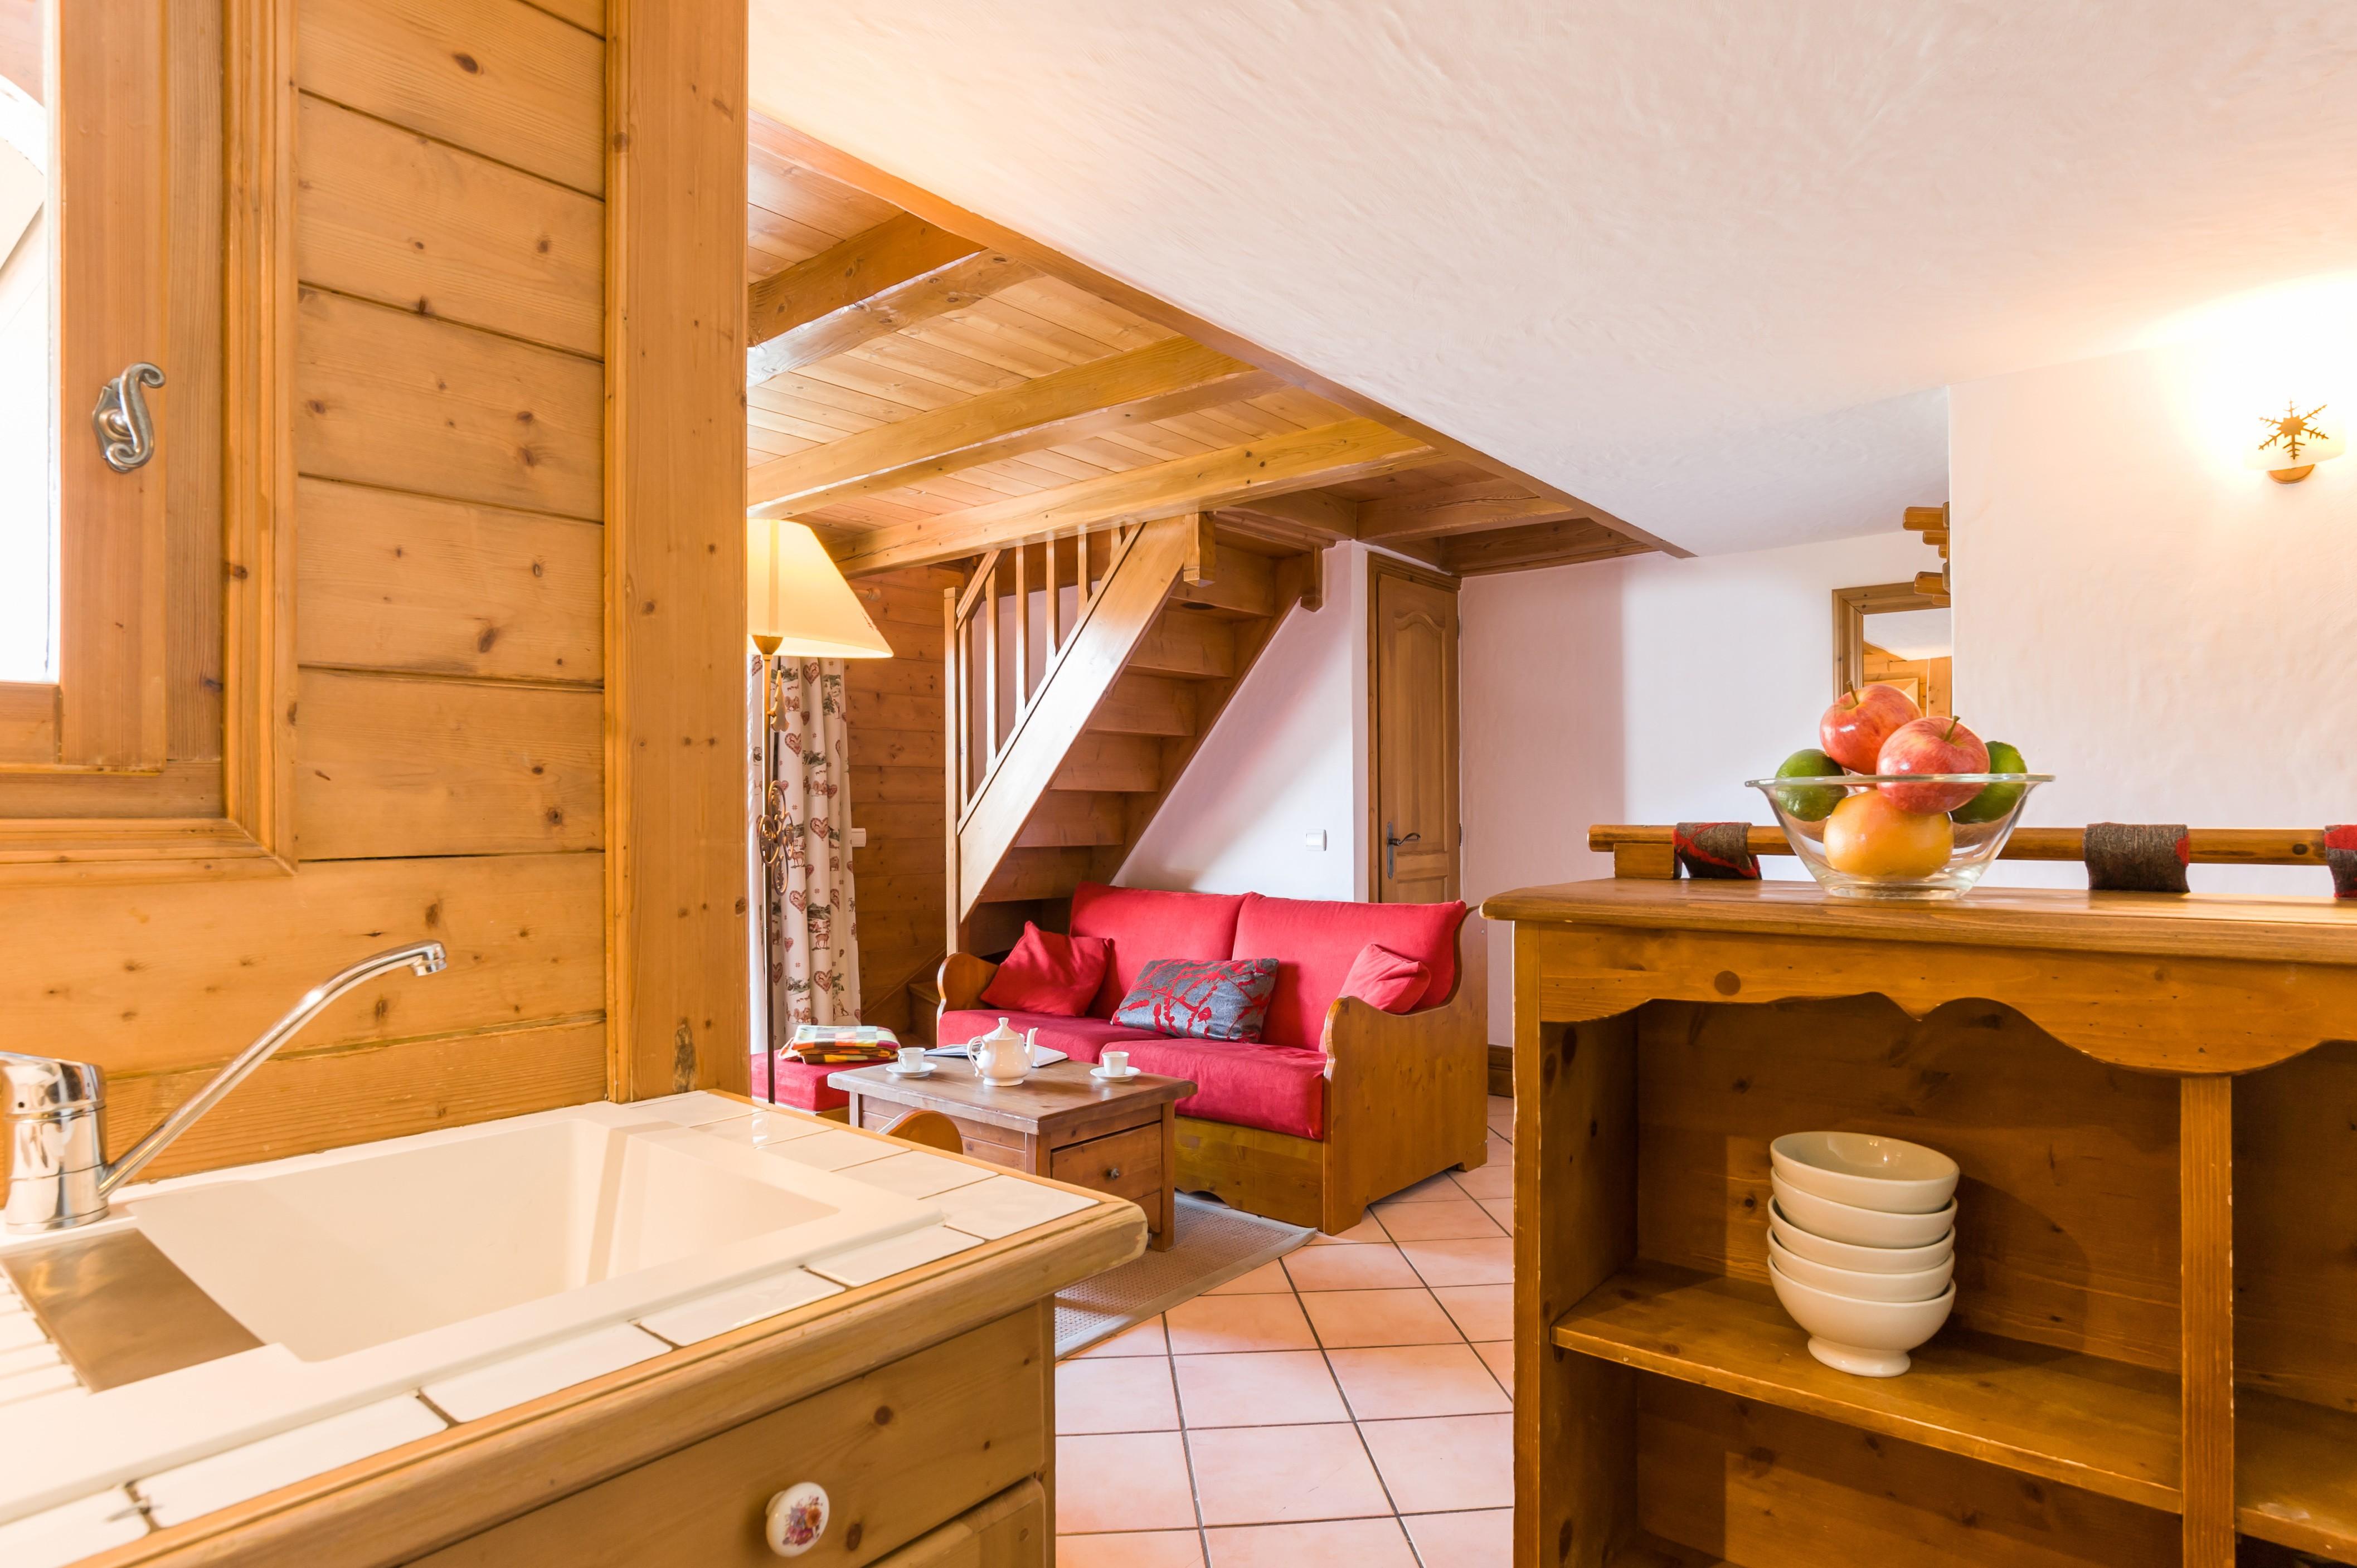 Residence Pierre & Vacances Premium Les Alpages De Chantel Les Arcs  Экстерьер фото